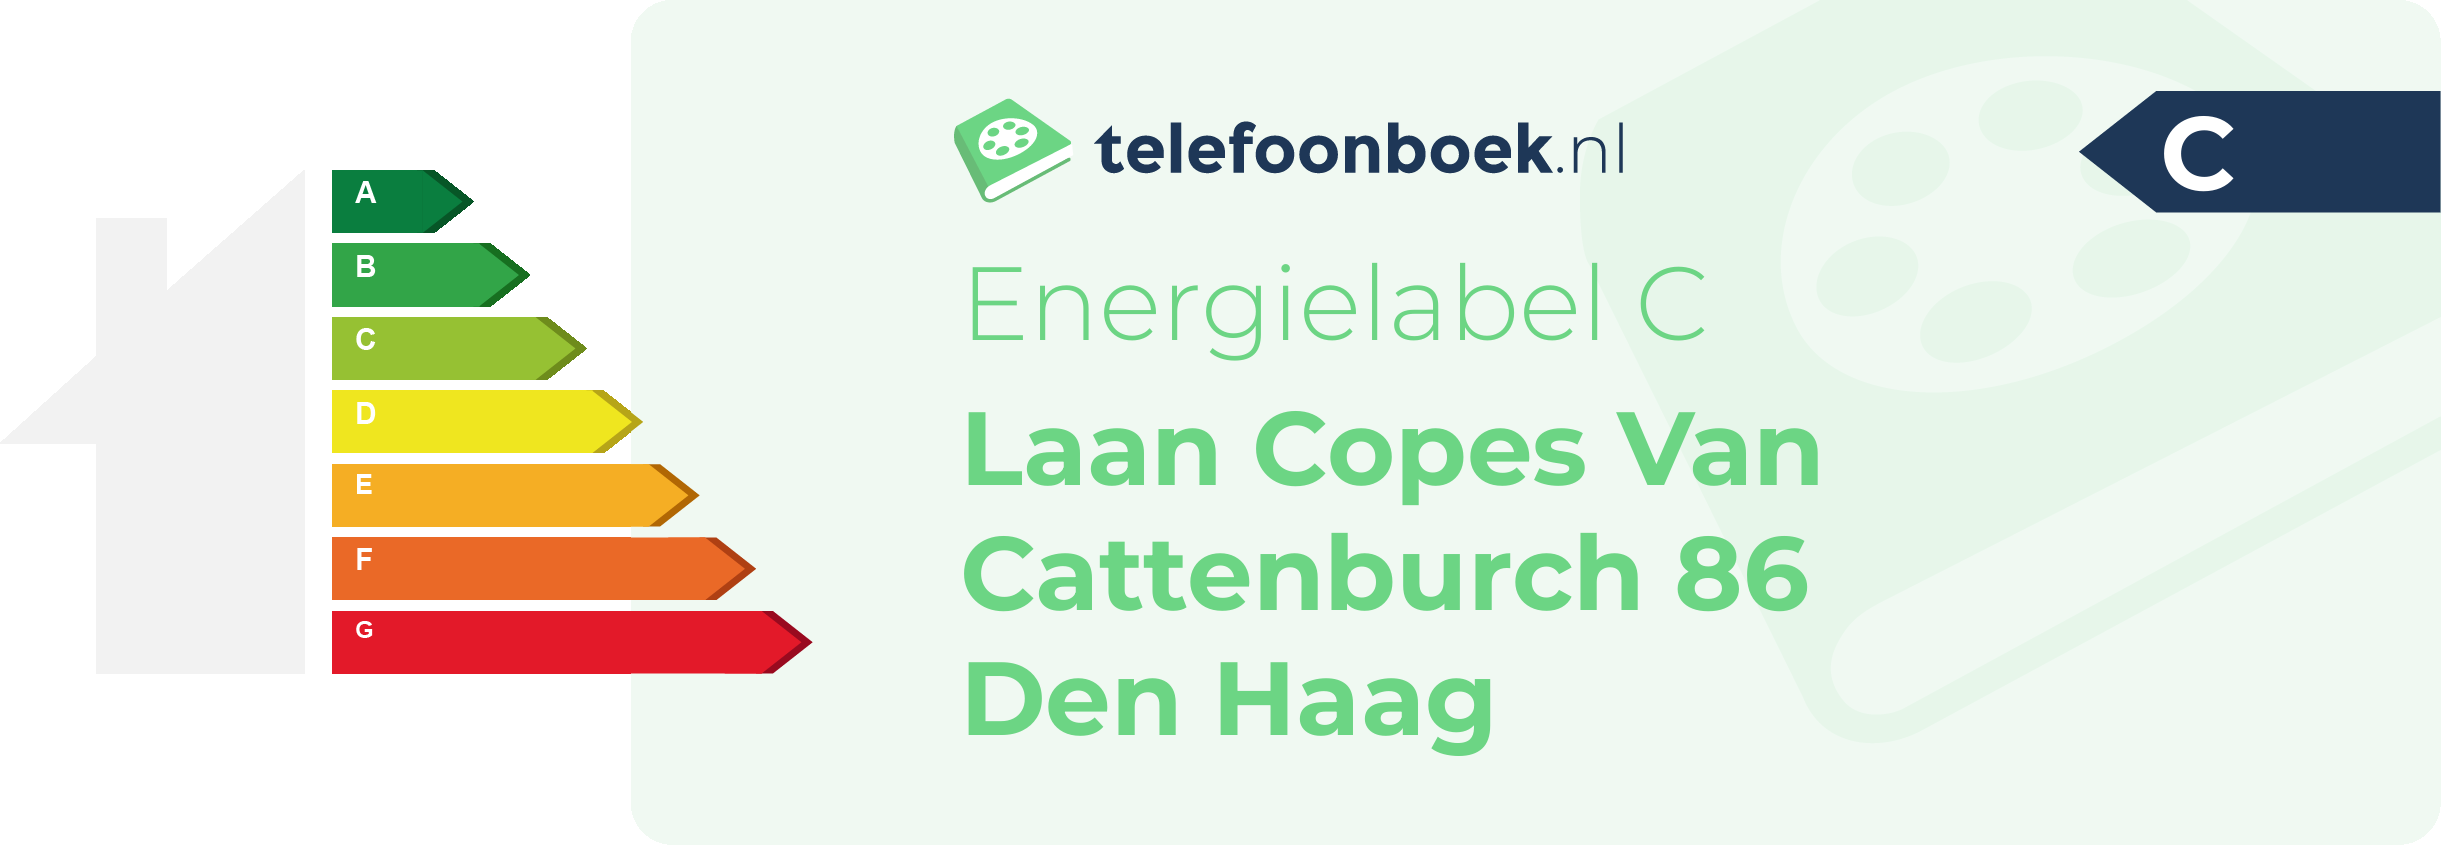 Energielabel Laan Copes Van Cattenburch 86 Den Haag